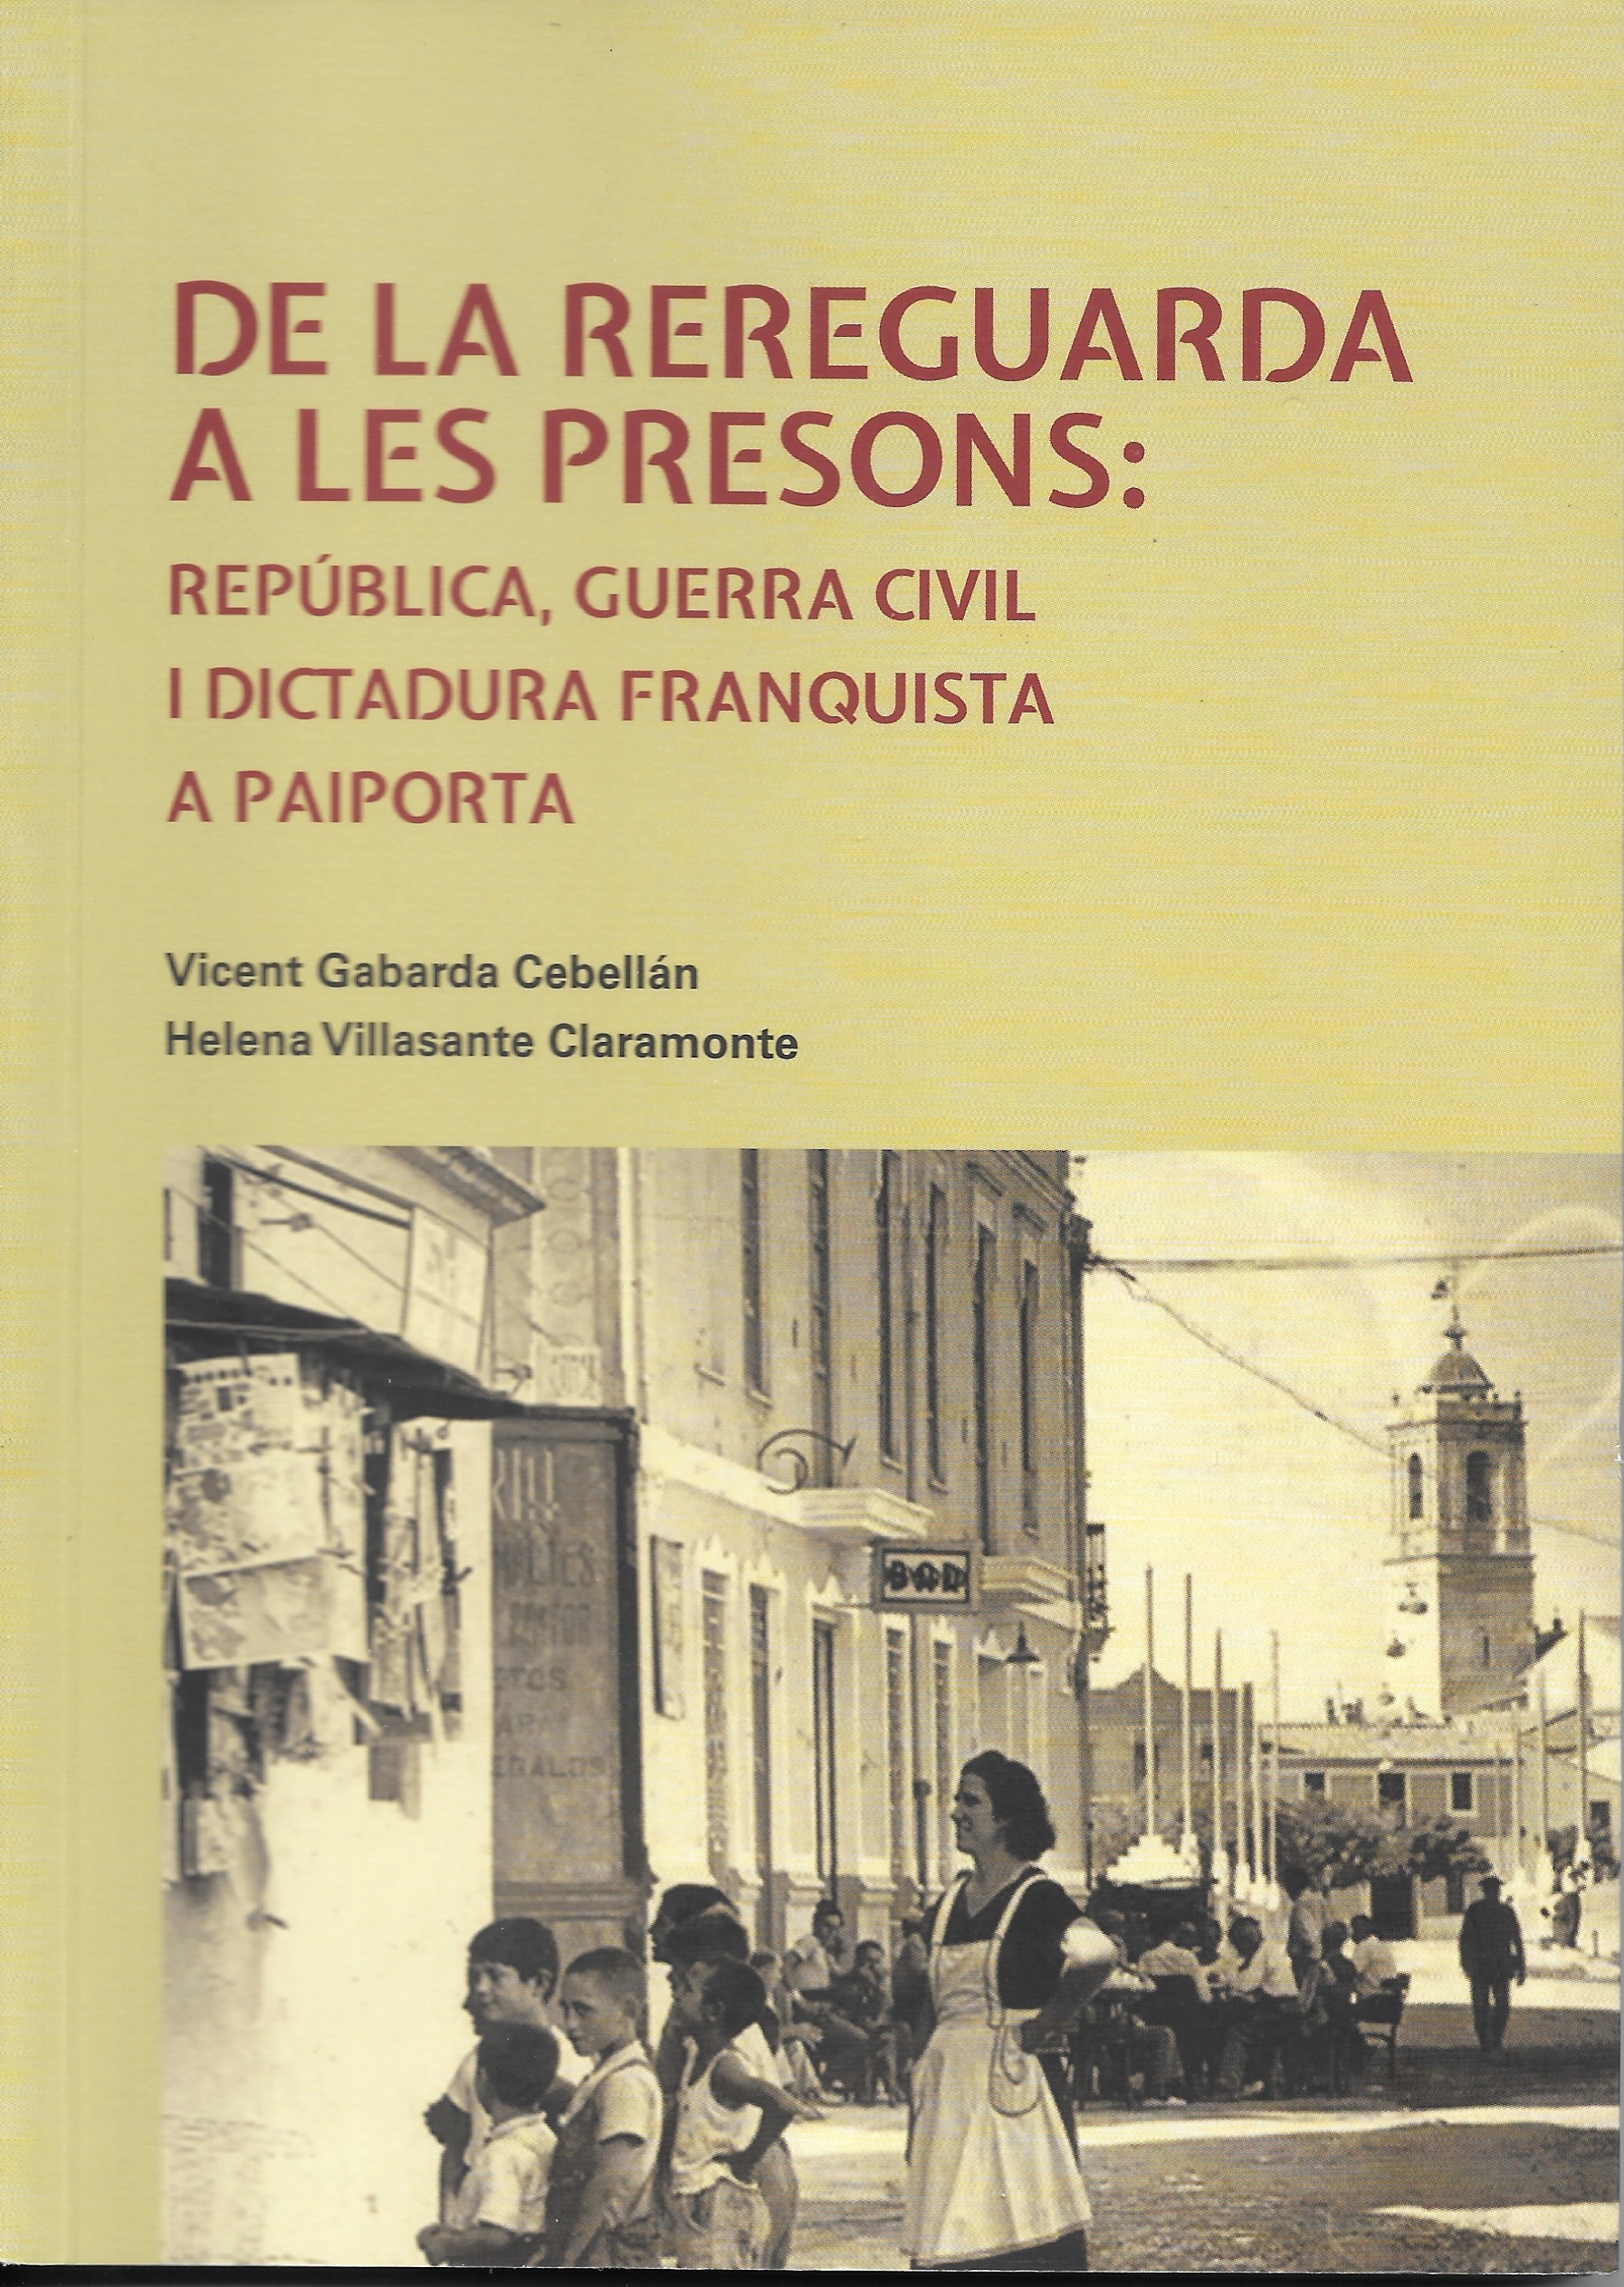 De la Rereguarda a les Presons: República, Guerra Civil i Dictadura Franquista a Paiporta